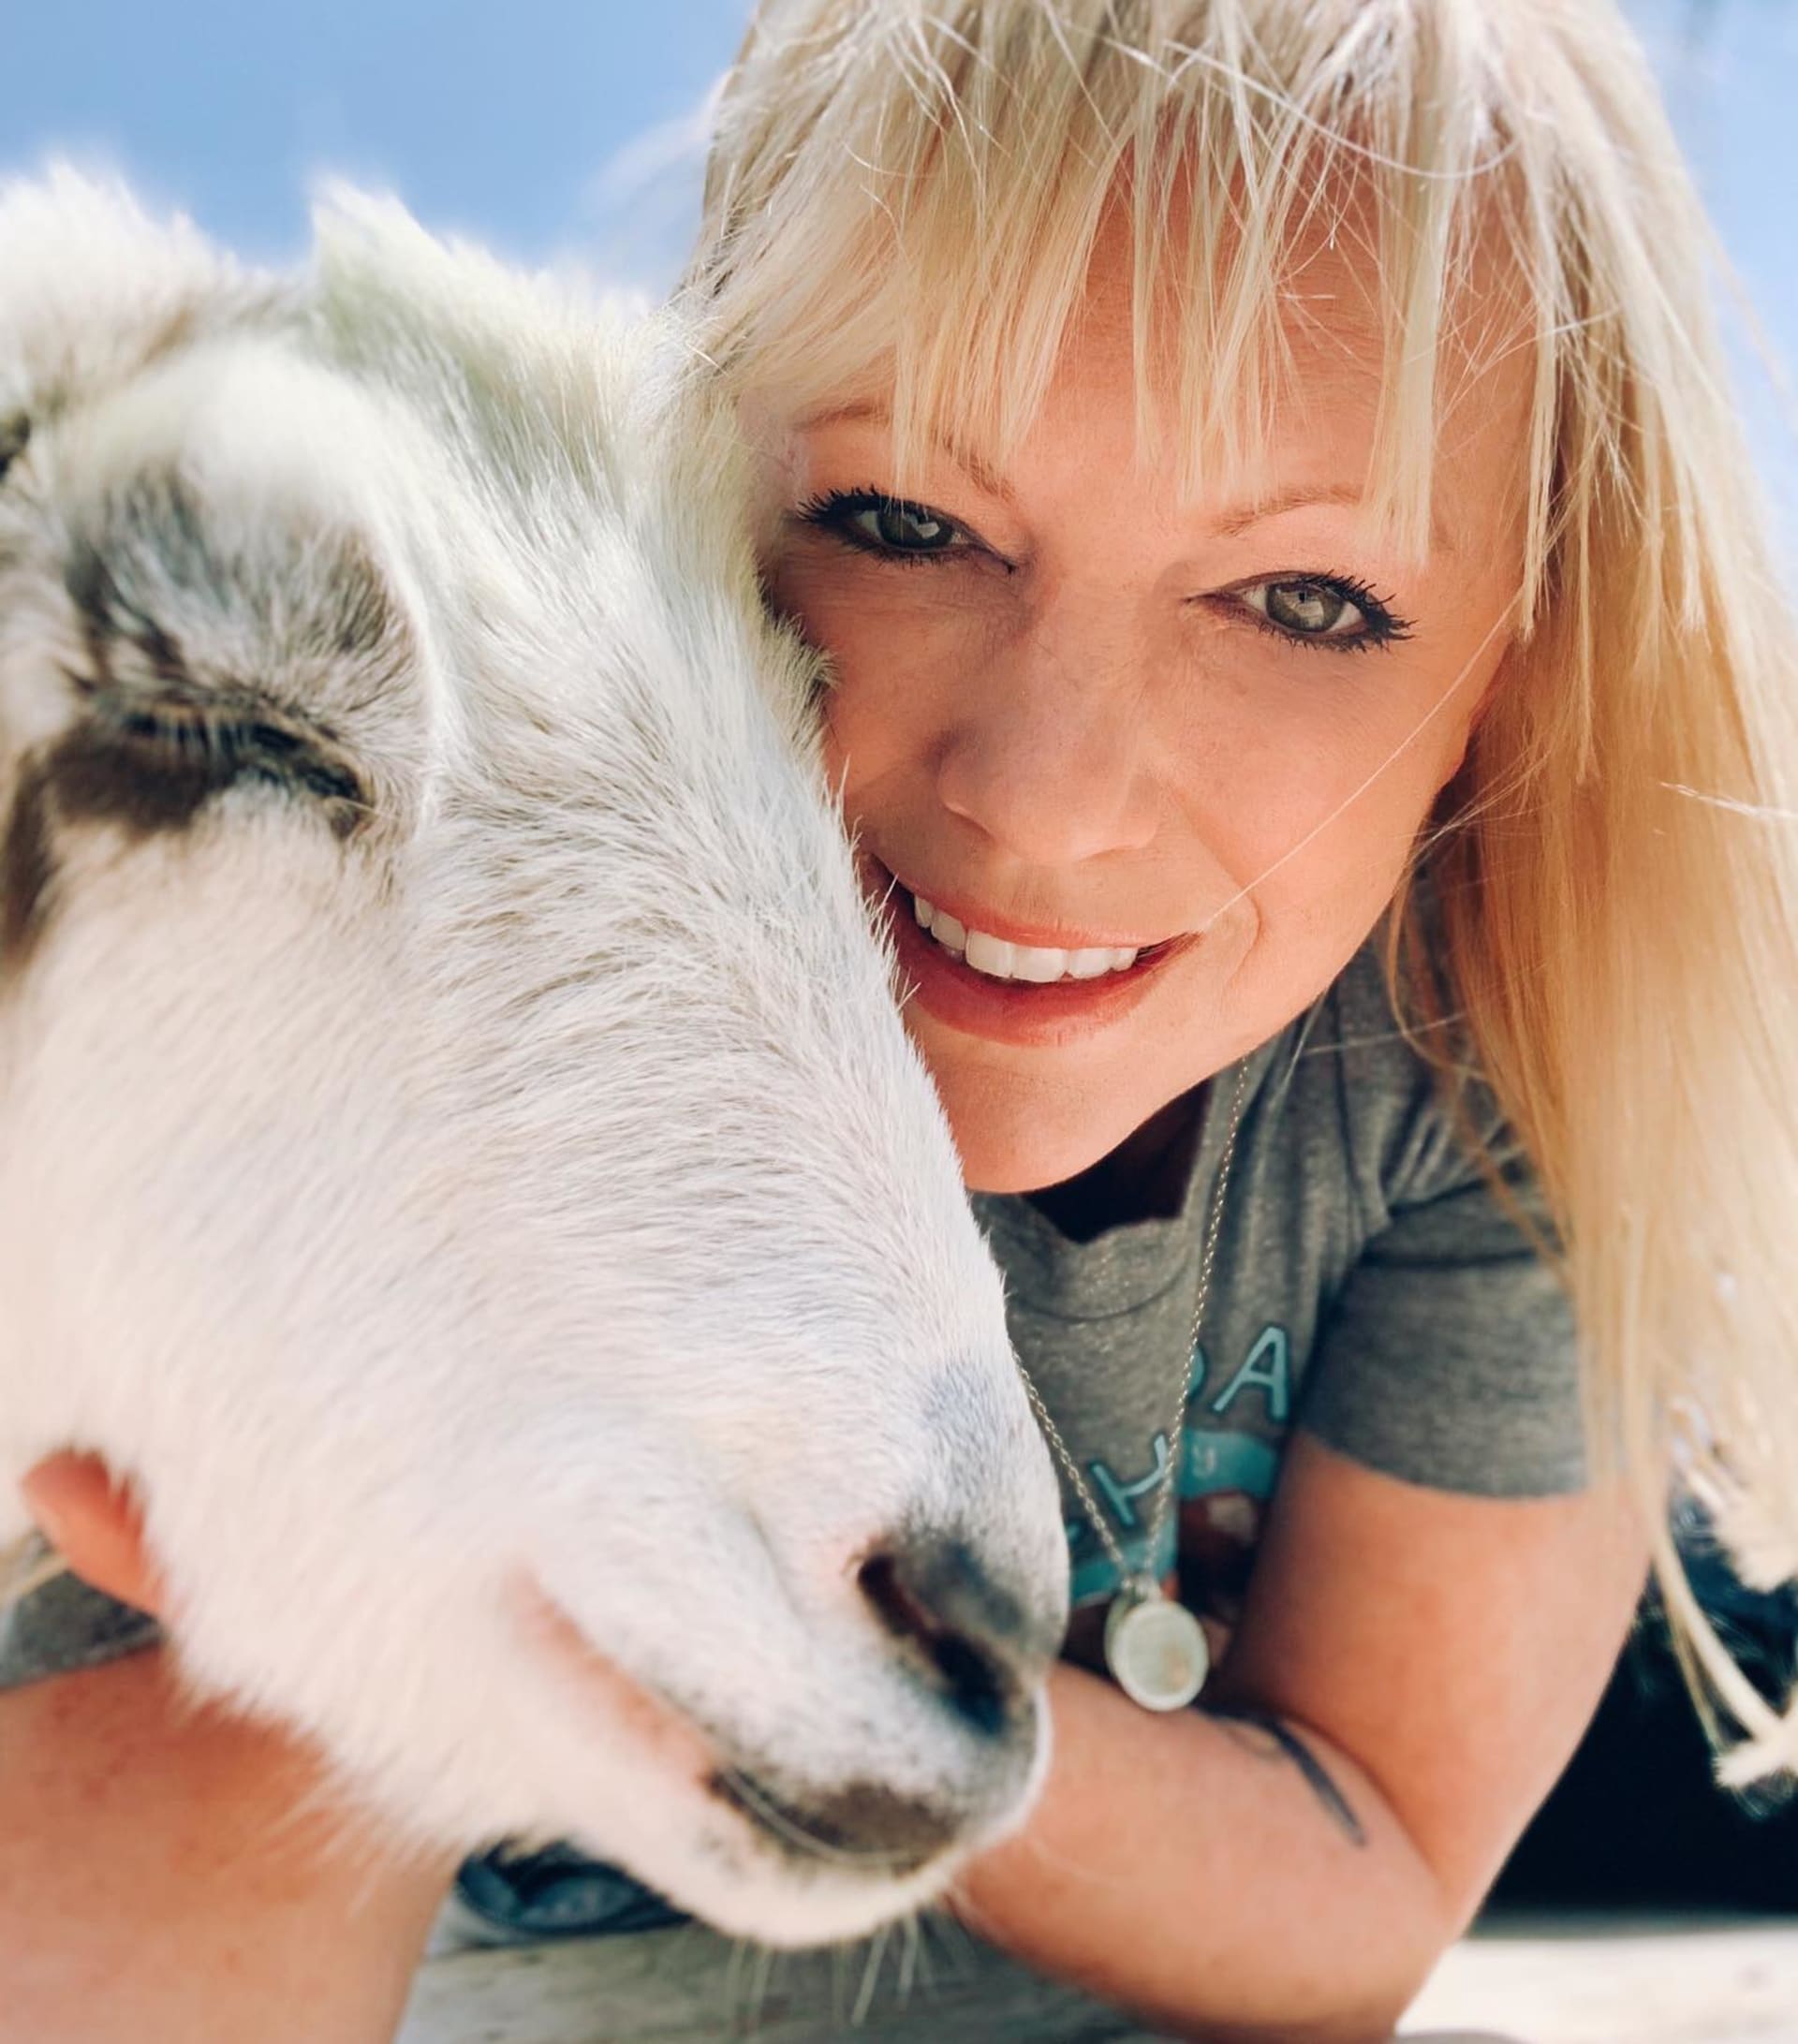 Leanne změnila svůj život od základů: stala se vegankou a věnuje se ochraně zvířat. Zdroj: Facebook Goats of Anarchy